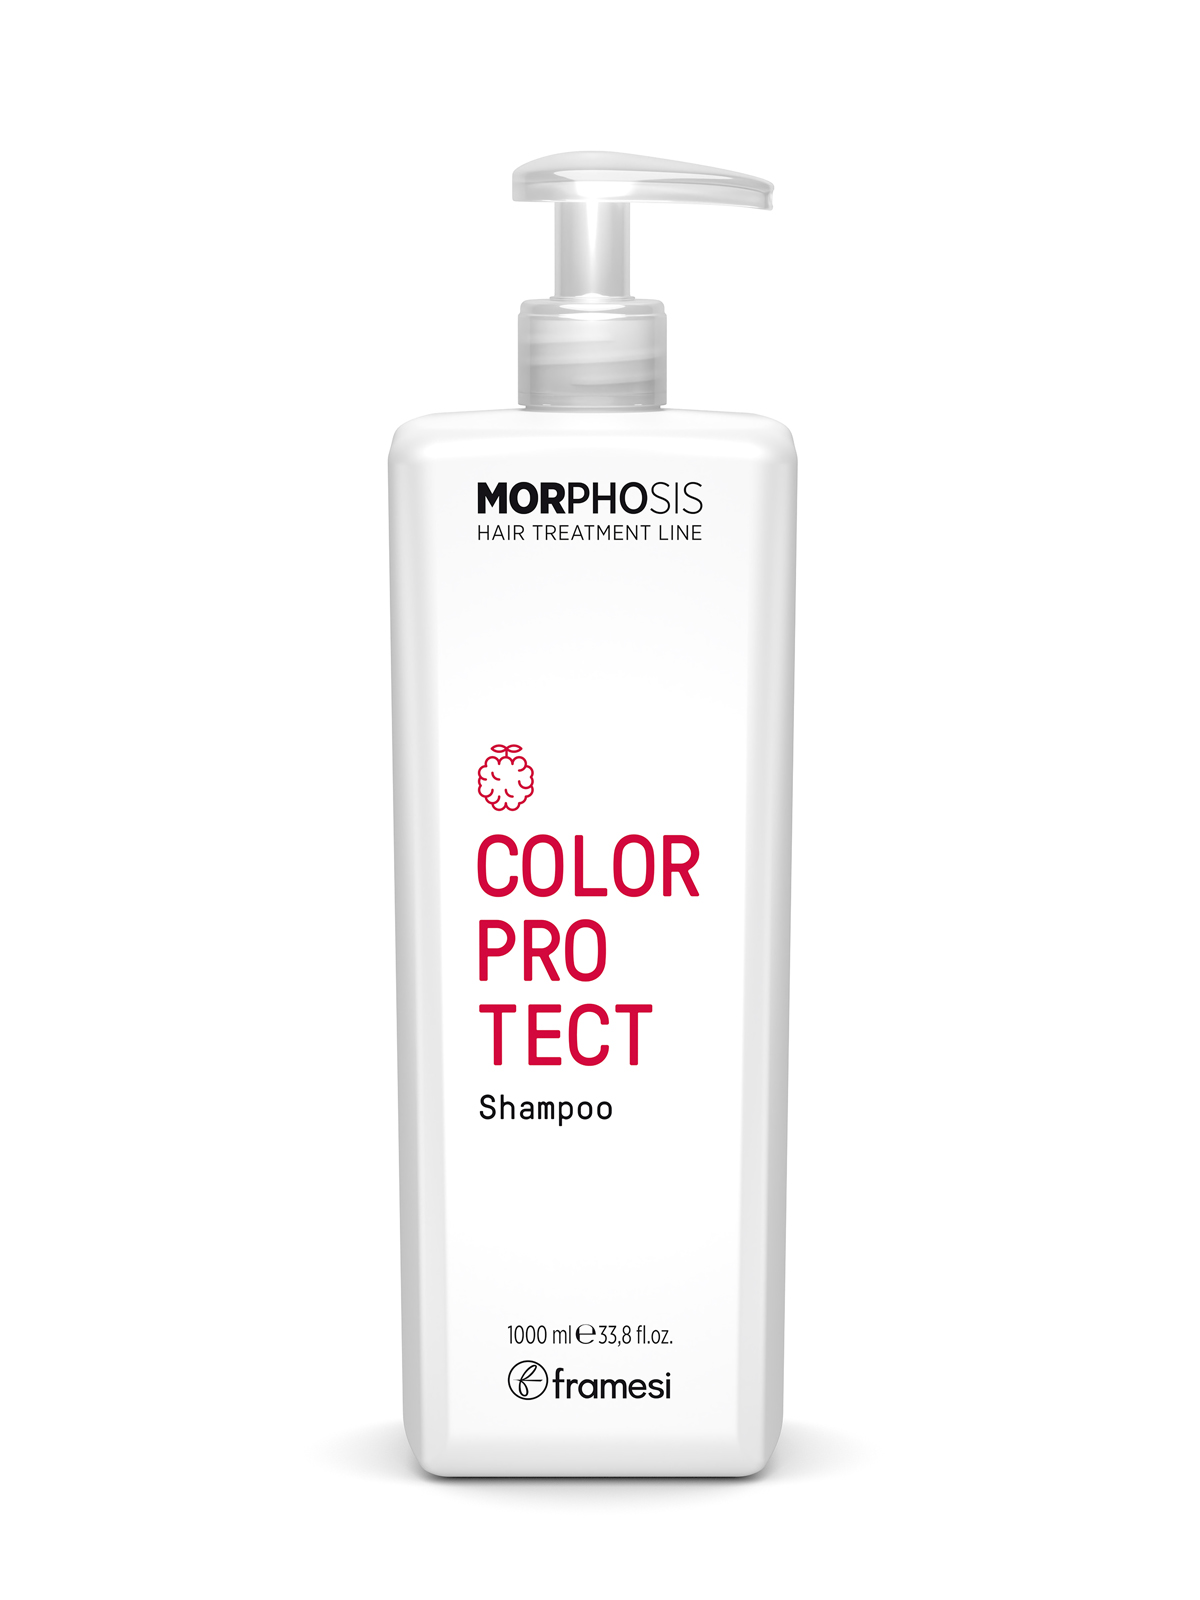 Шампунь Framesi Color protect shampoo для окрашенных волос 1000 мл зубная паста blend a med complete protect expert 2 шт х 75 мл 2 упаковки